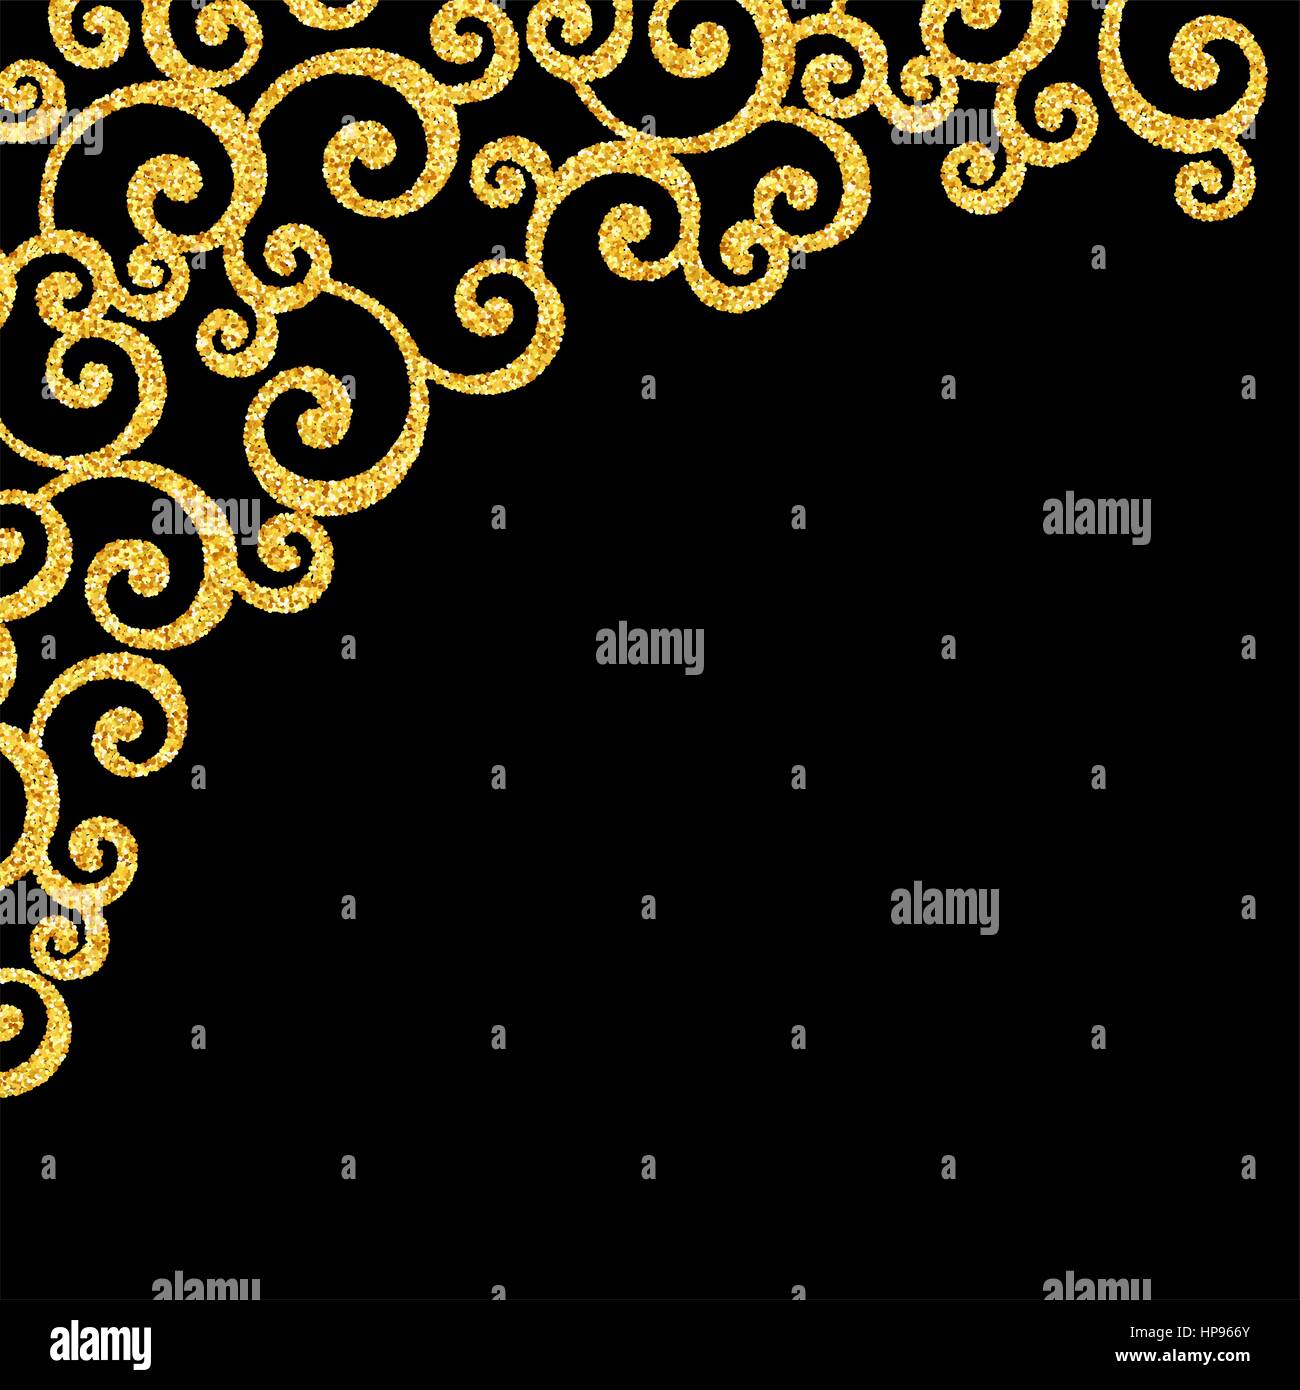 Vettore Glitter oro Floral arricciamento Carta di invito con Damasco Swirl Pattern su sfondo nero Illustrazione Vettoriale